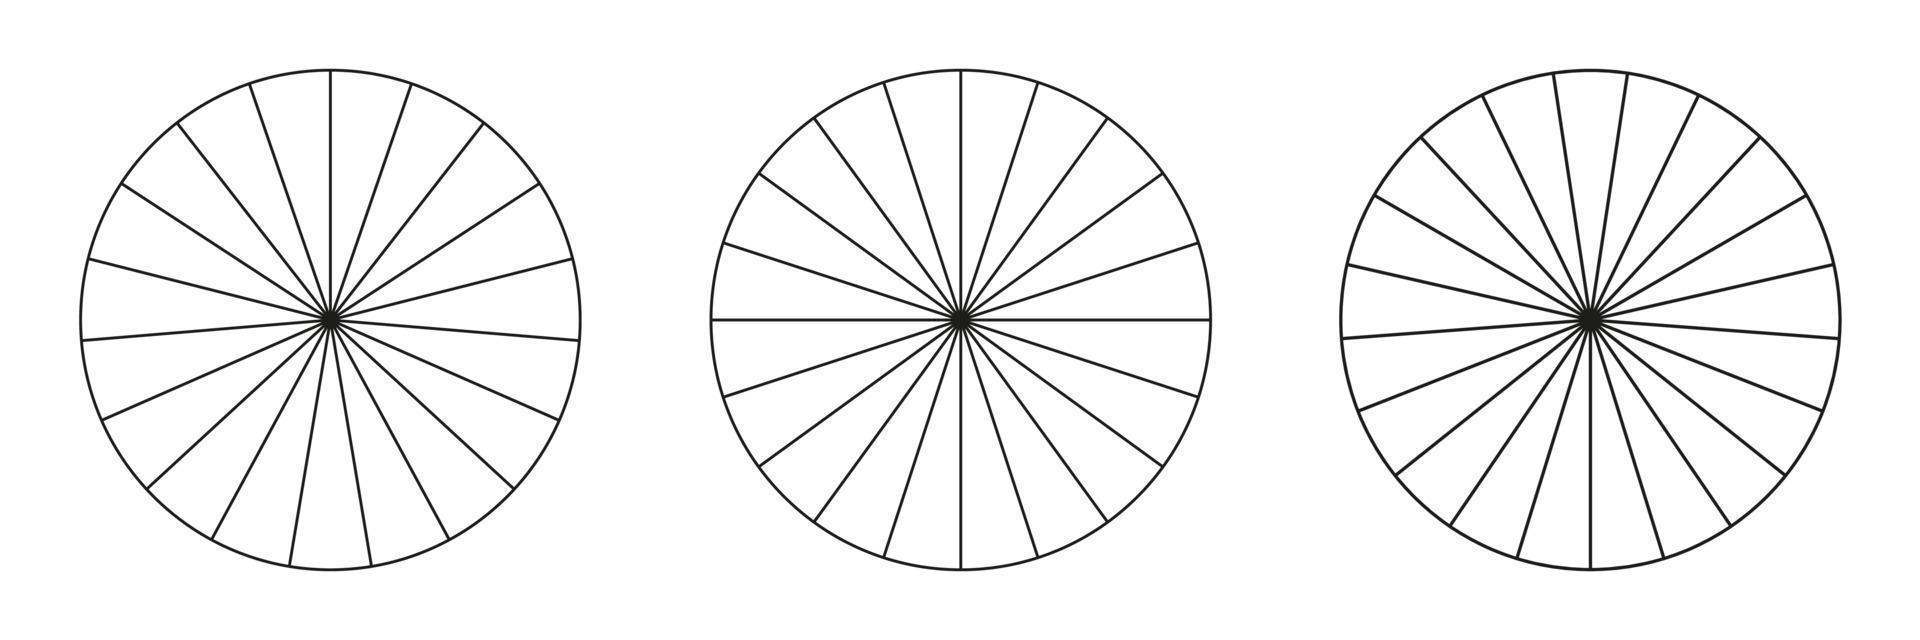 círculos divididos en 19,20,21 segmentos. pizza o pastel de formas redondas cortadas en porciones iguales. conjunto de estilo de contorno. colección de gráficos simples. vector